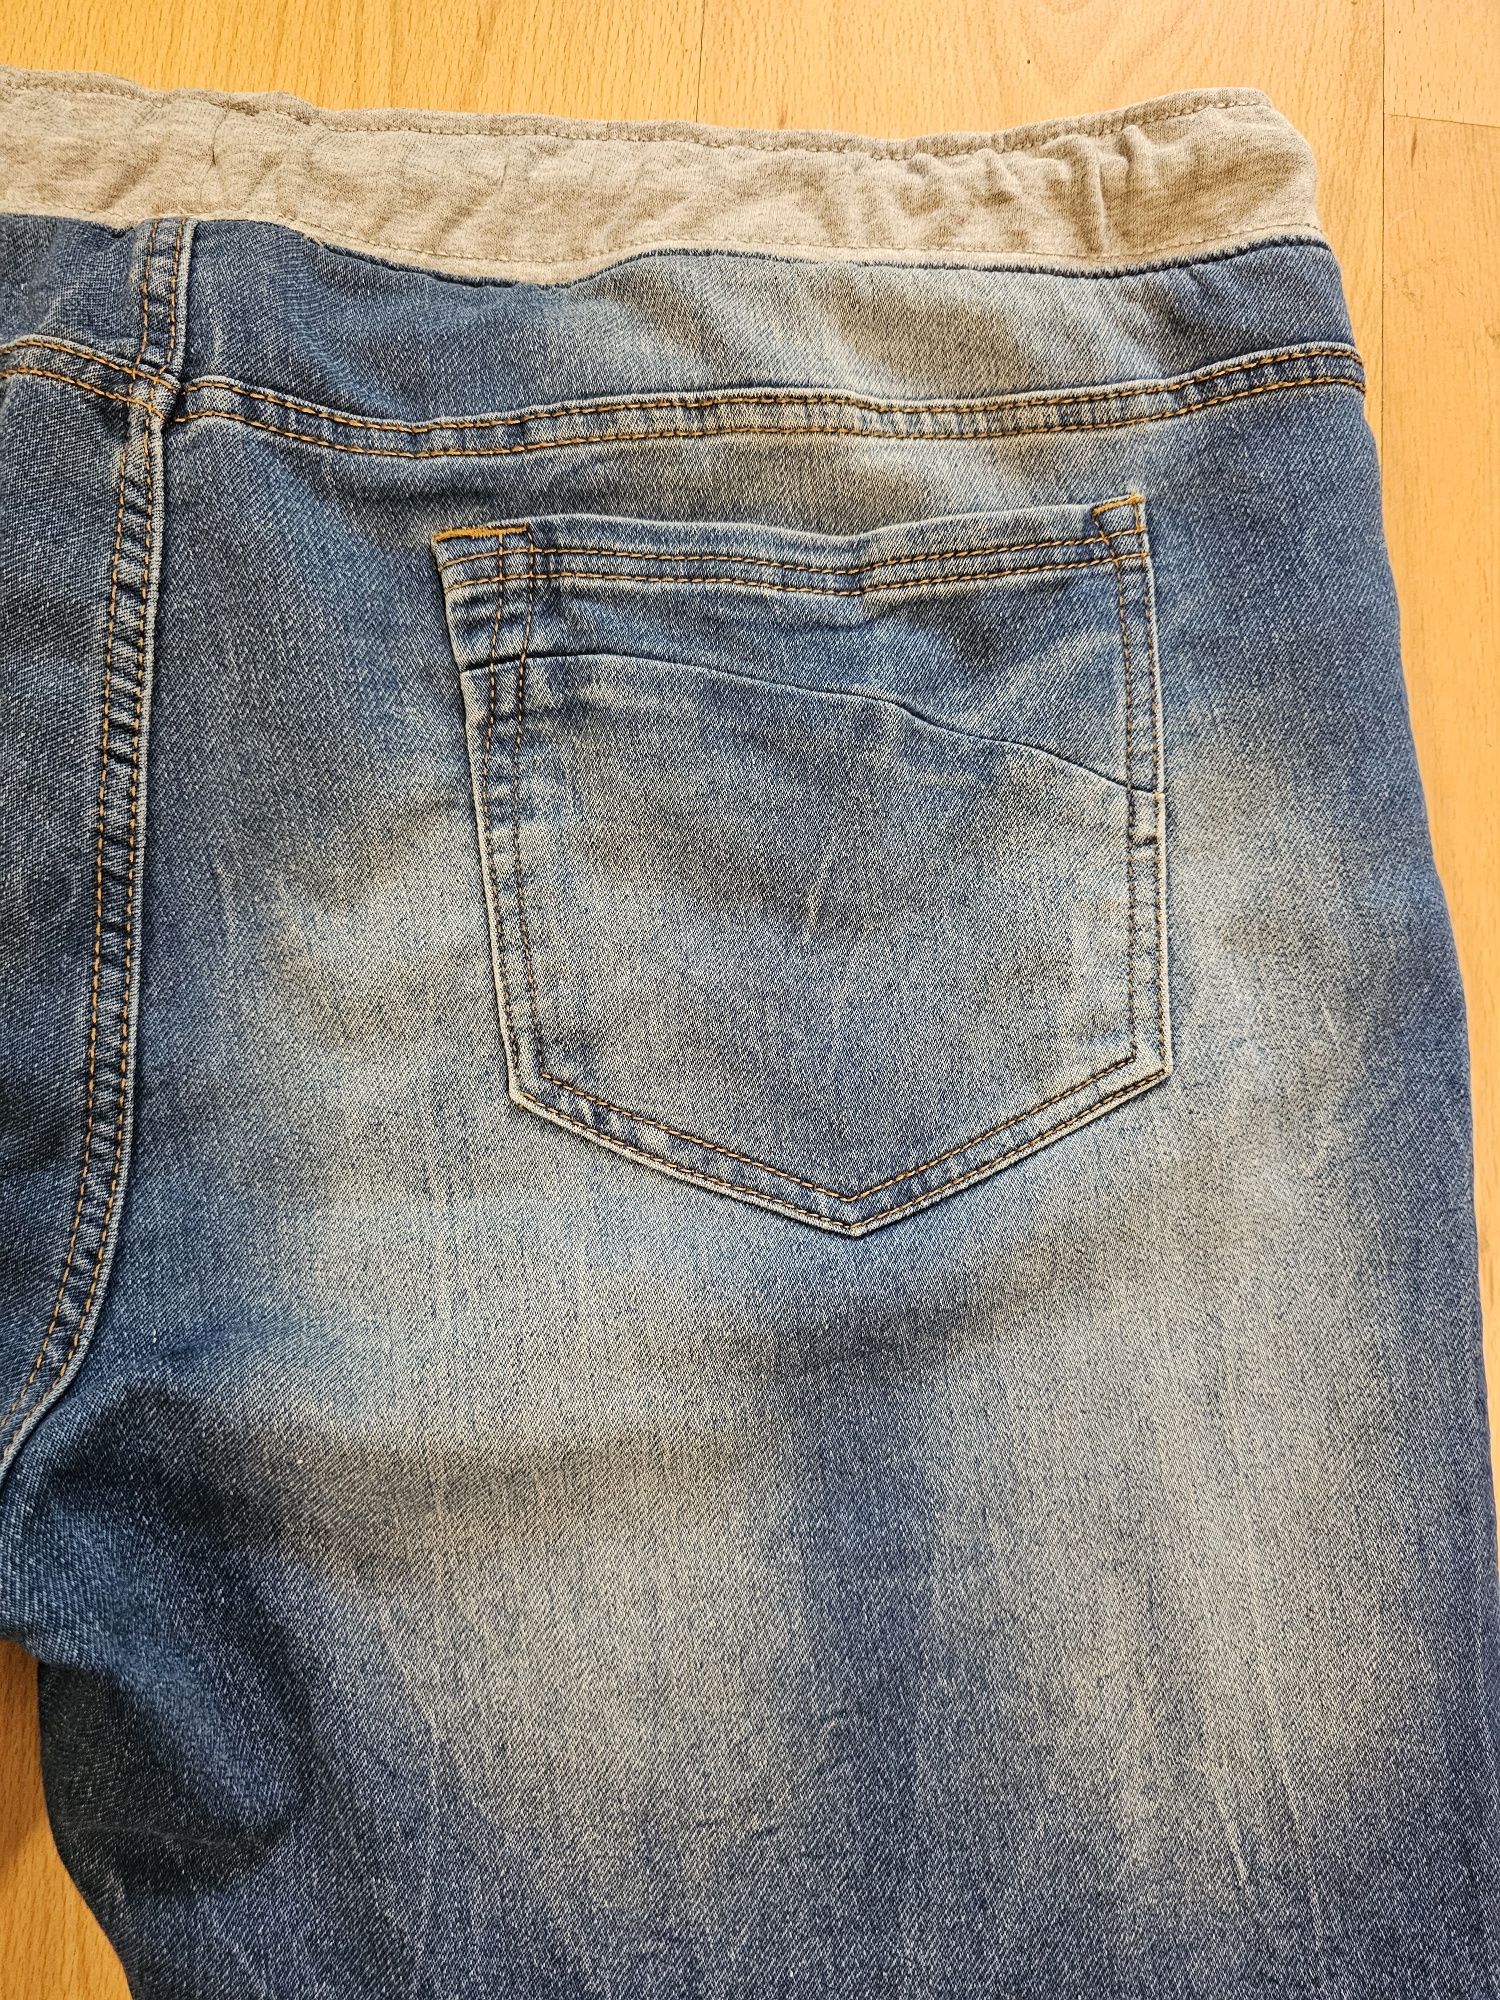 Krótkie spodenki jeansowe Identic Man Plus roz.XXXXL , 4 XL , Laicra ,